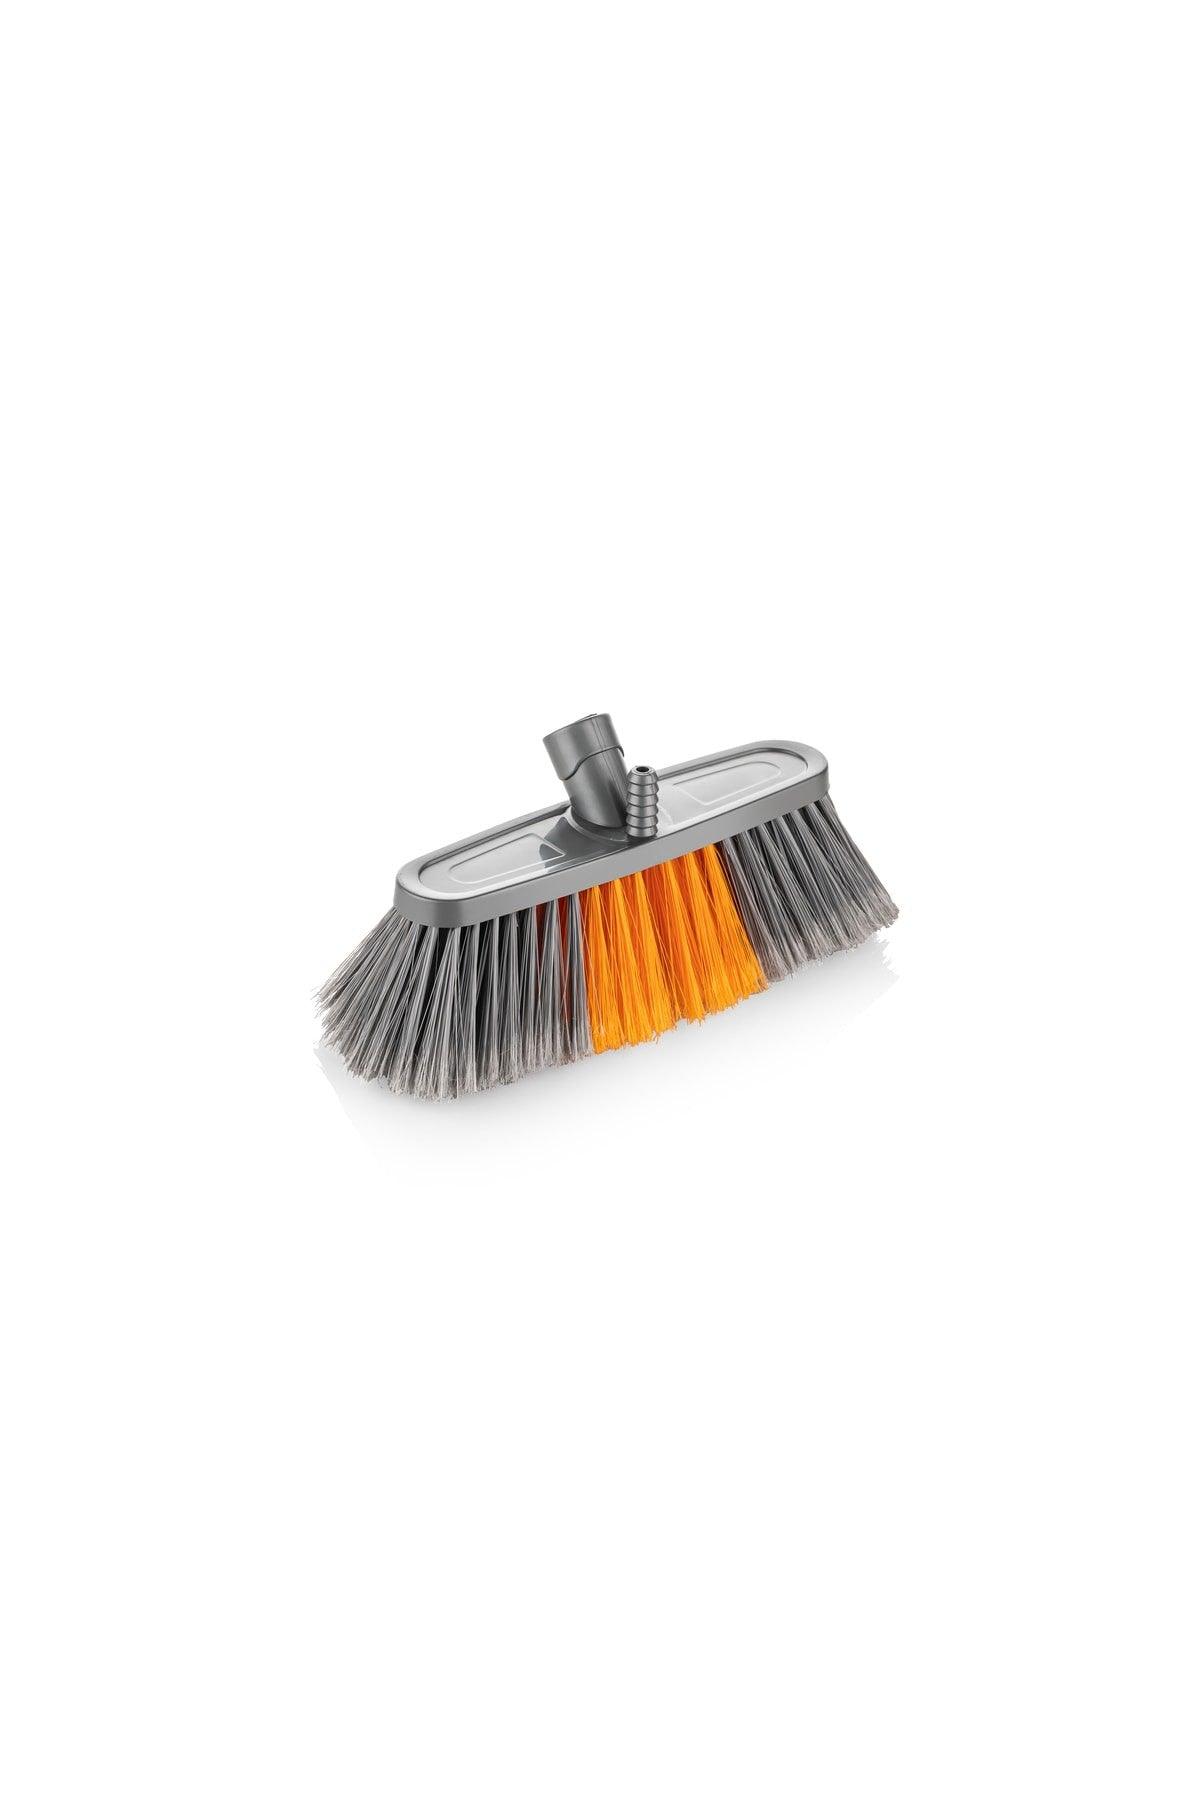 Auto Brush - Orange Floor Brush Vacuum Cleaner 15 Cm. Eh-500 - Swordslife